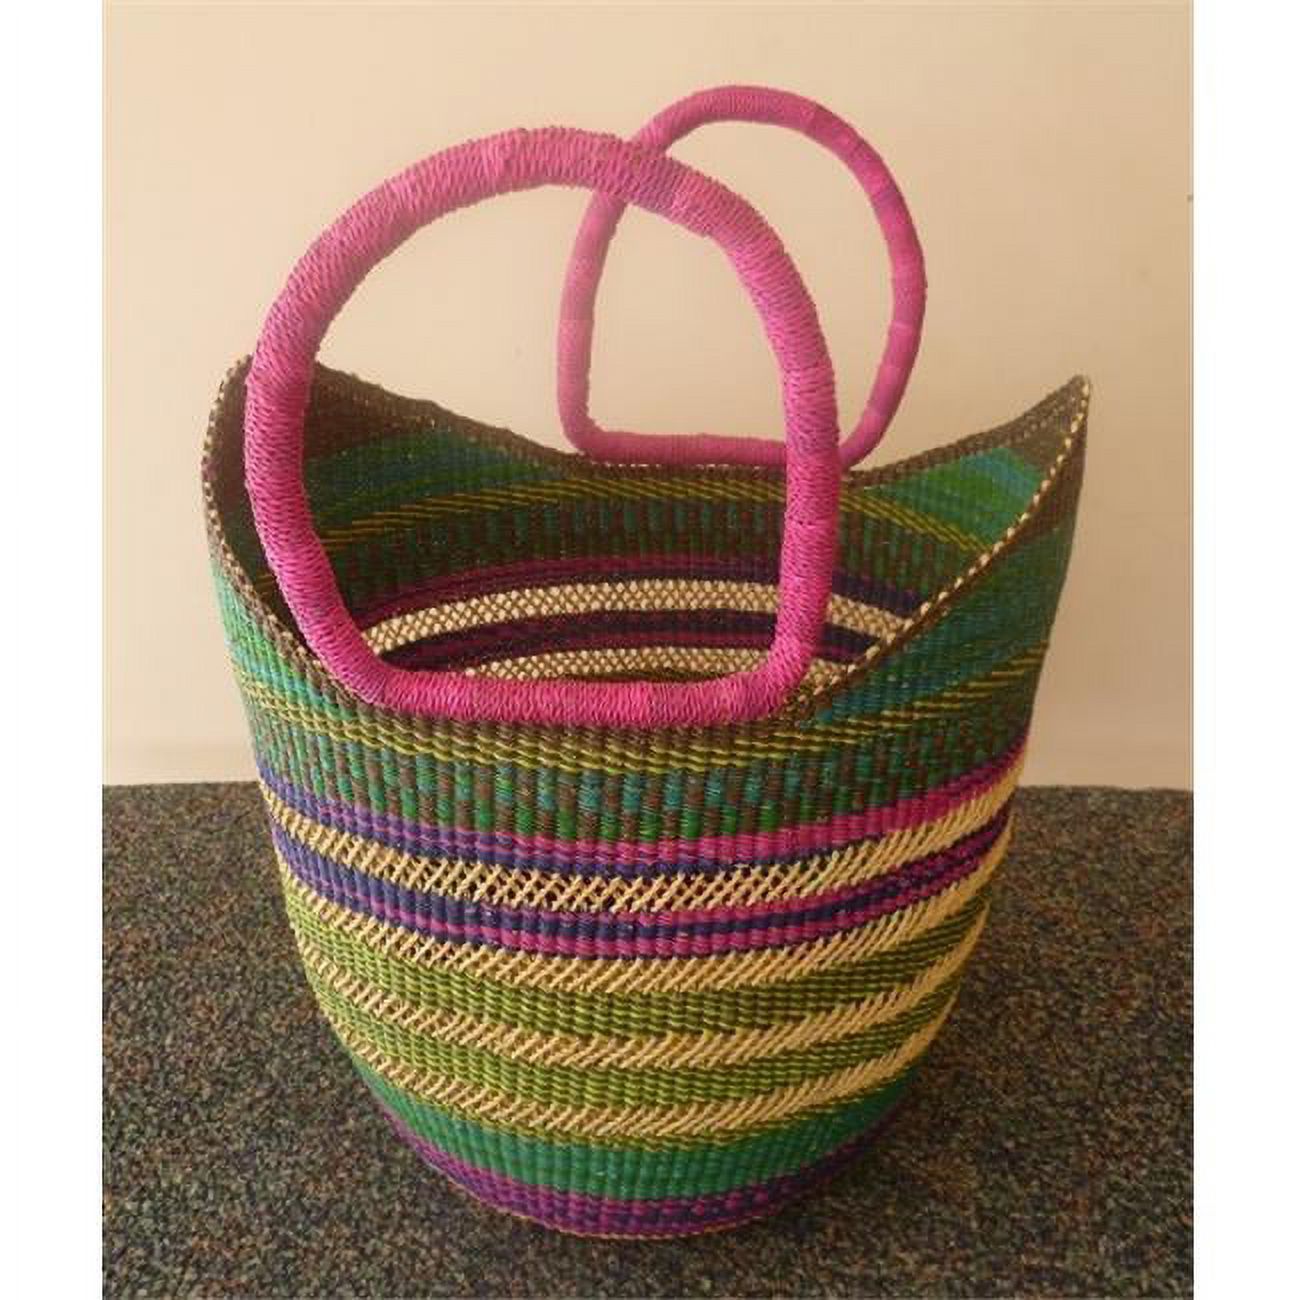 Rural Africa Crafts PB64 U-Shopper Basket - 15 x 10 x 11 in. - image 1 of 1